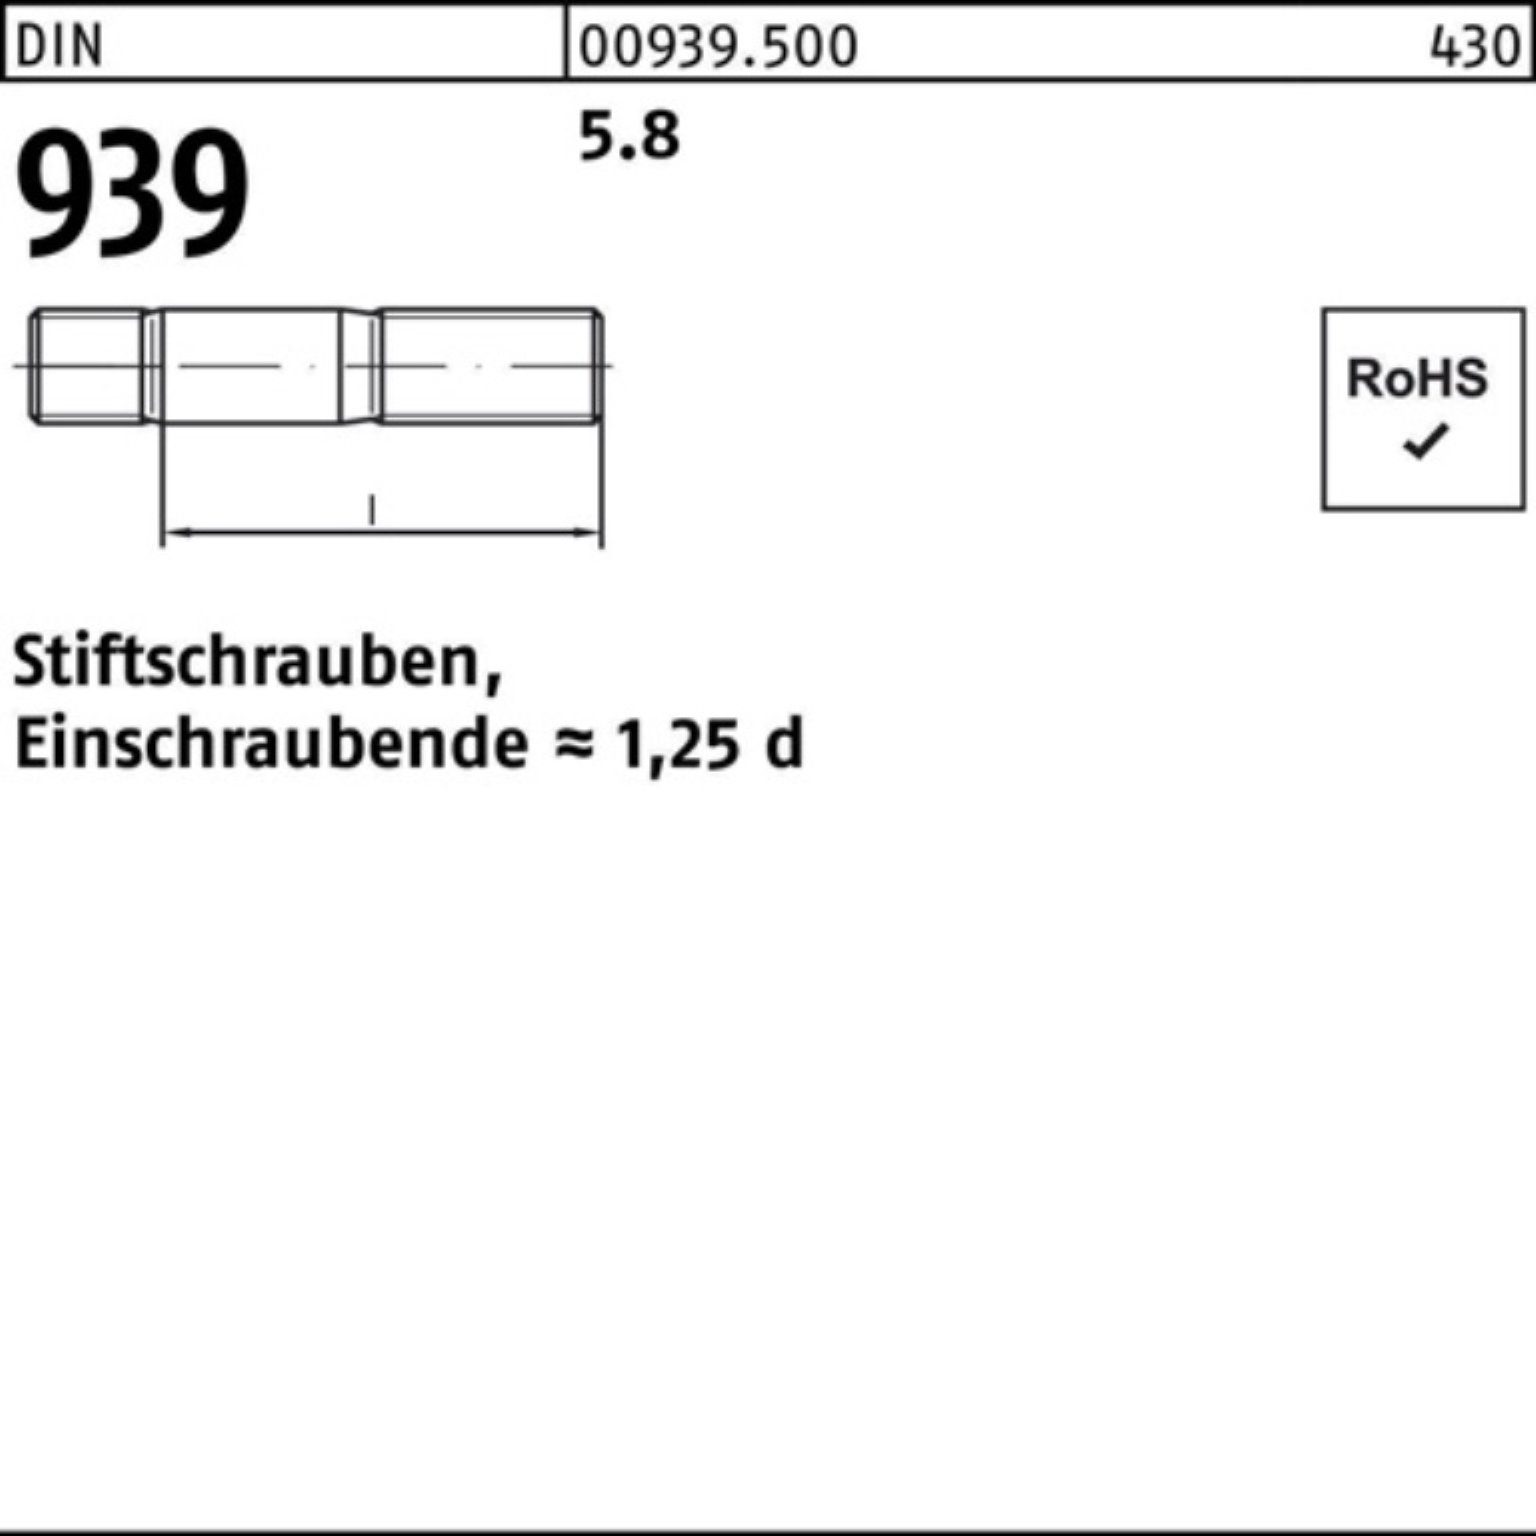 100er 939 DIN Reyher Stiftschraube Pack 80 5.8 Einschraubende=1,25d Stiftschraube 25 S M16x